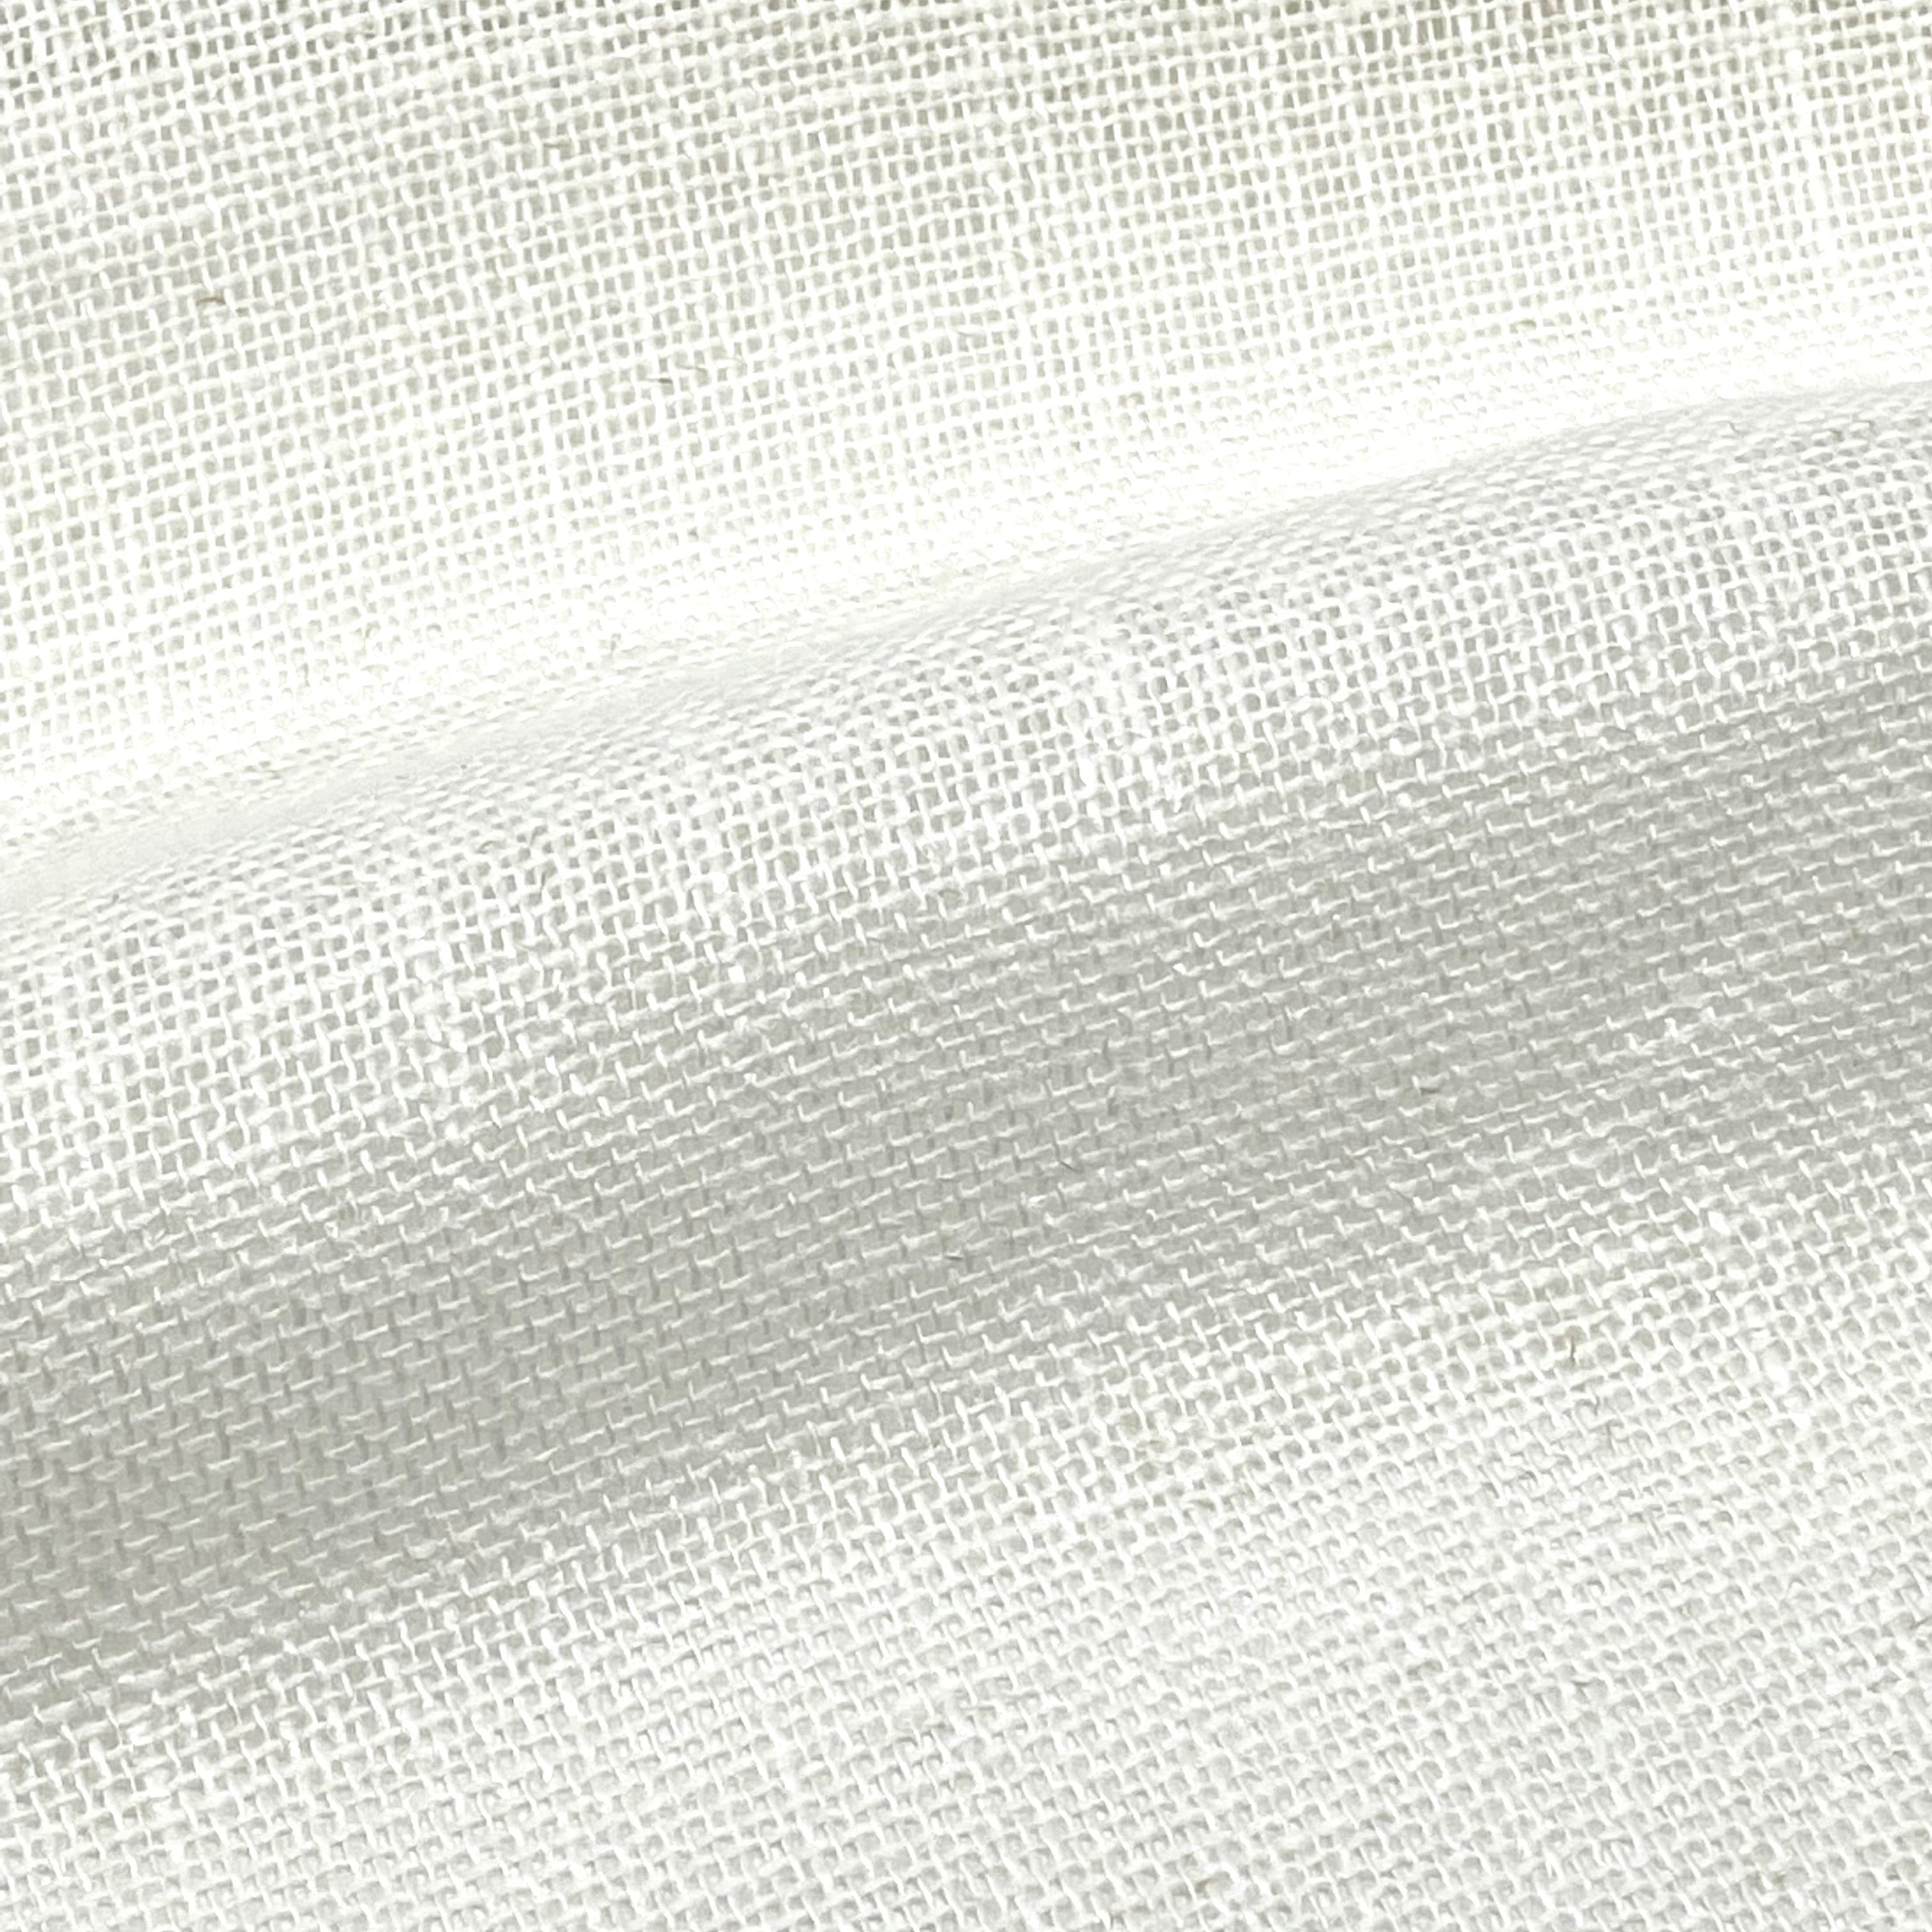 Buy Gauze Sheer Ecru Cotton Fabrics